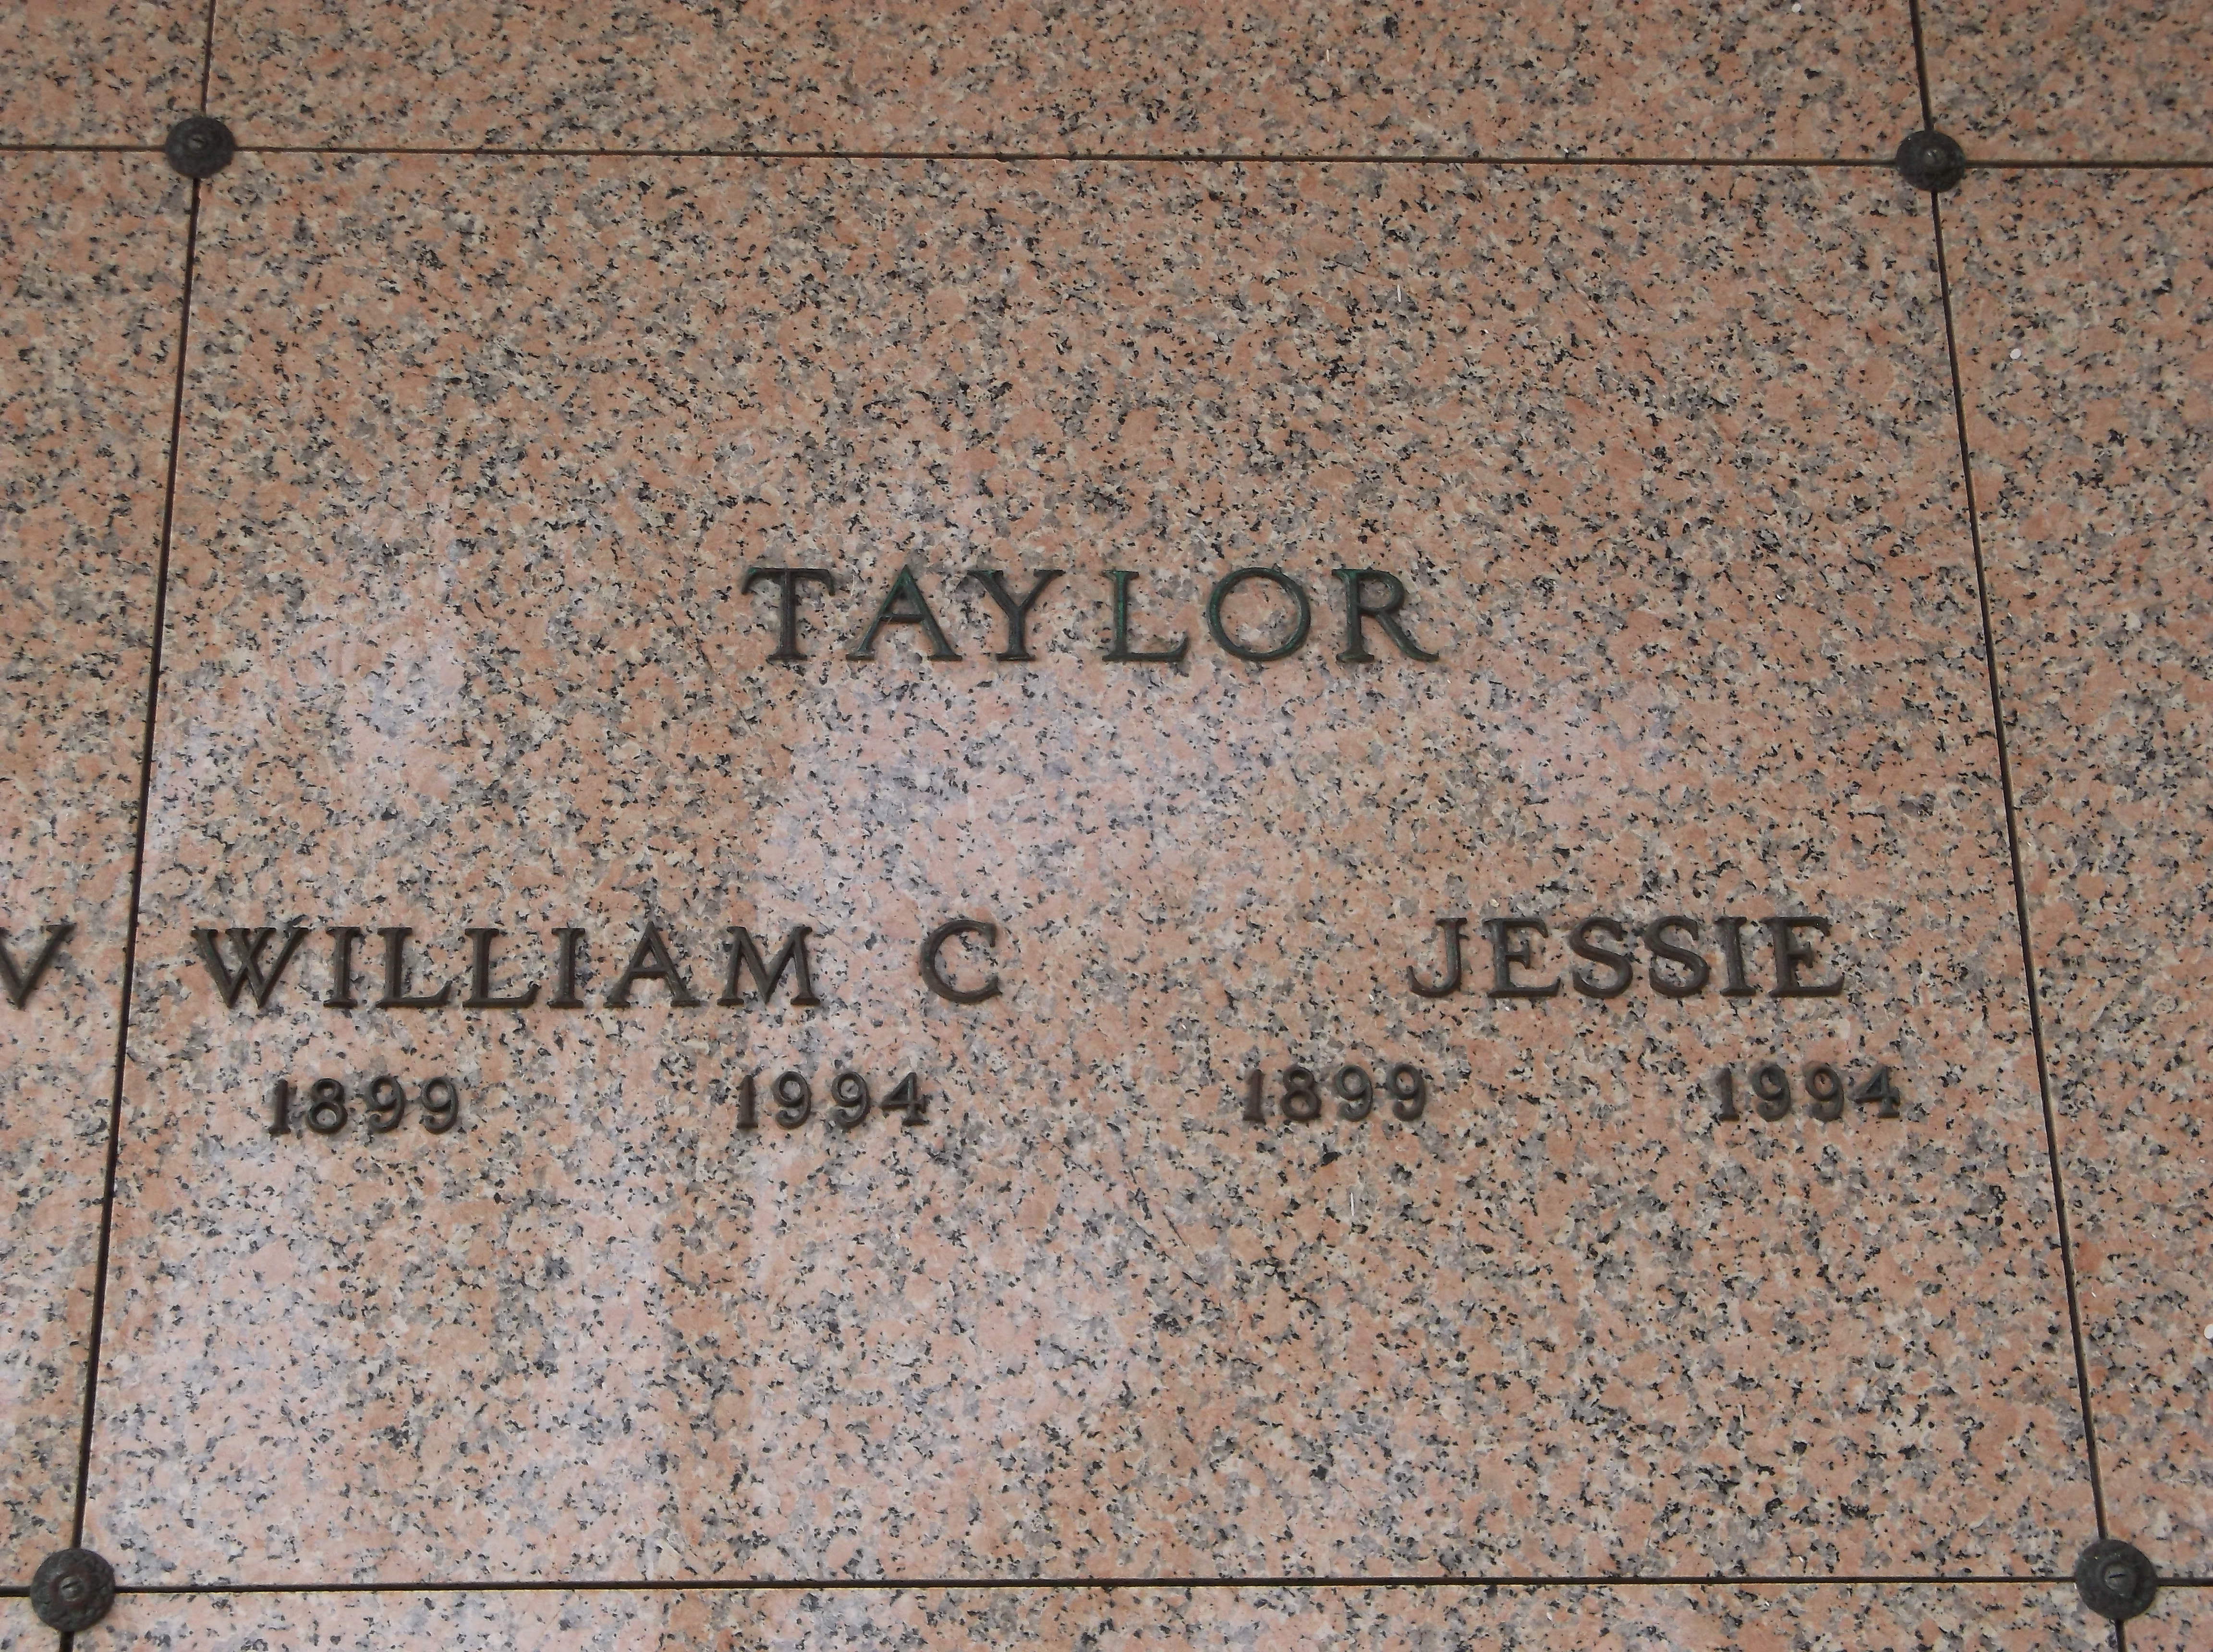 William C Taylor